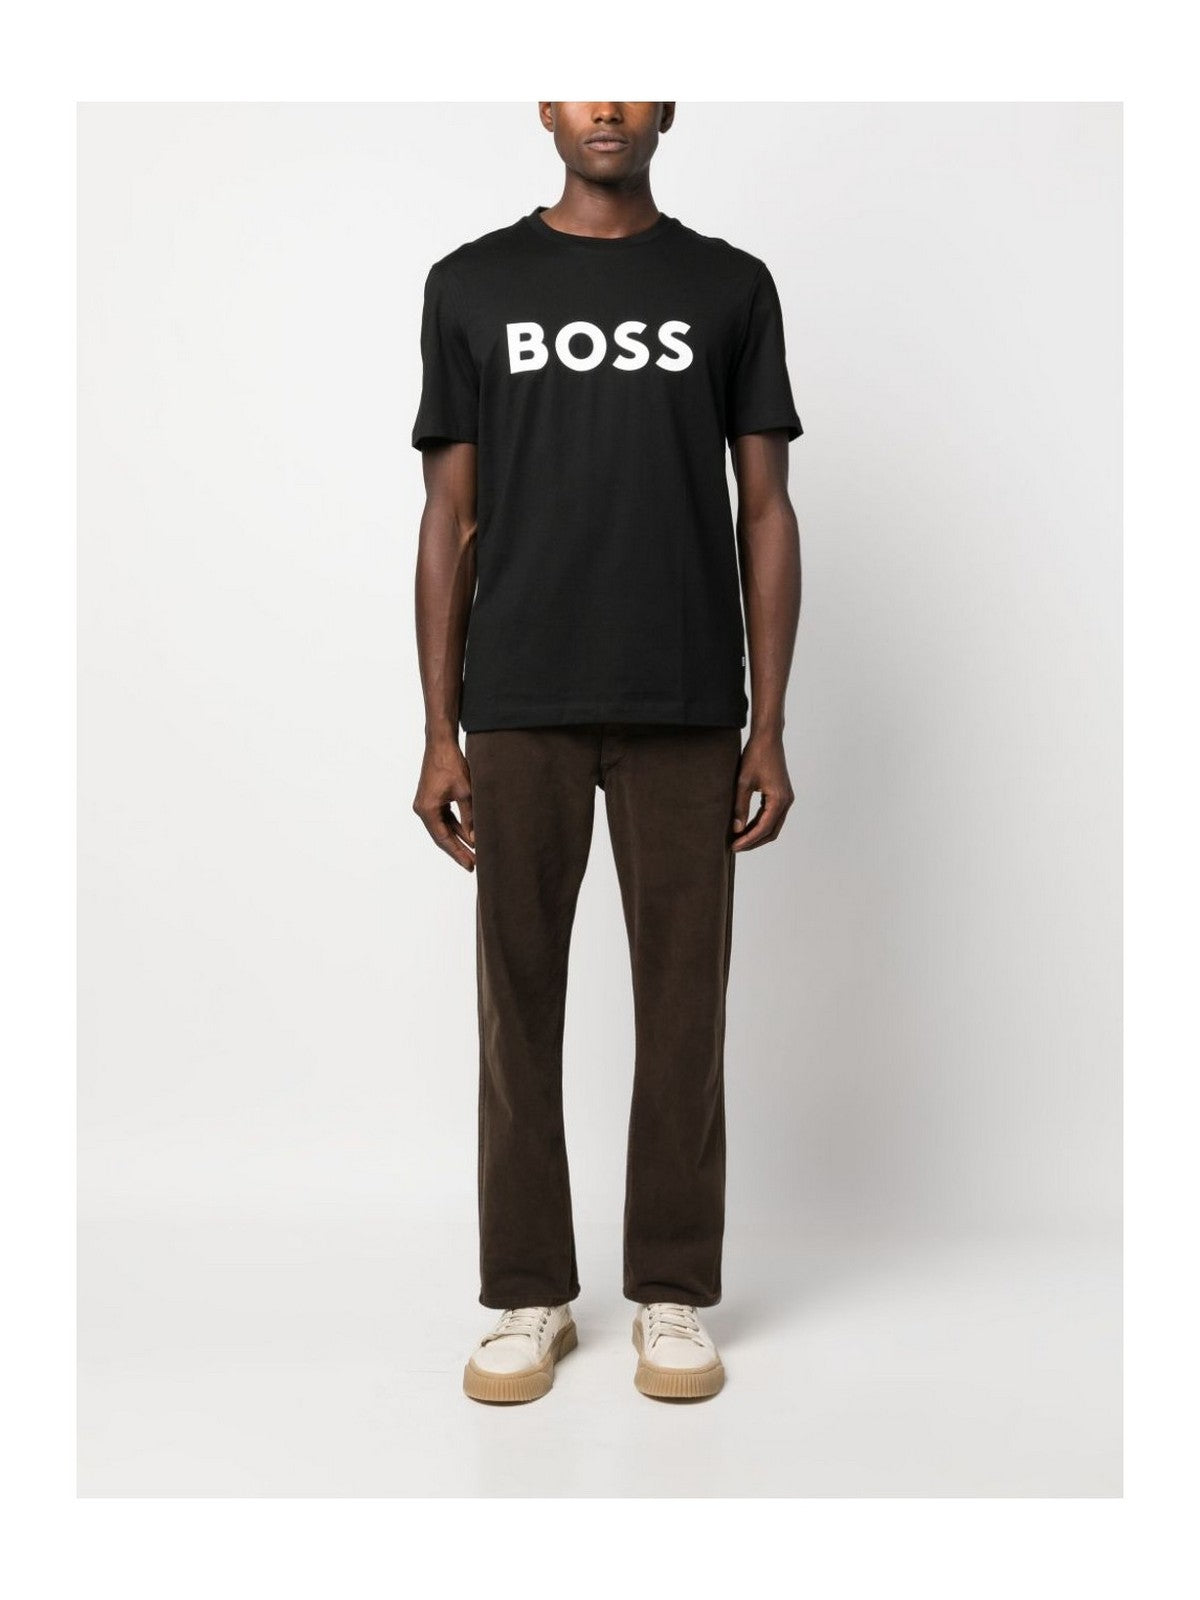 HUGO BOSS Hommes T-Shirt et Polo 50495742 001 Noir